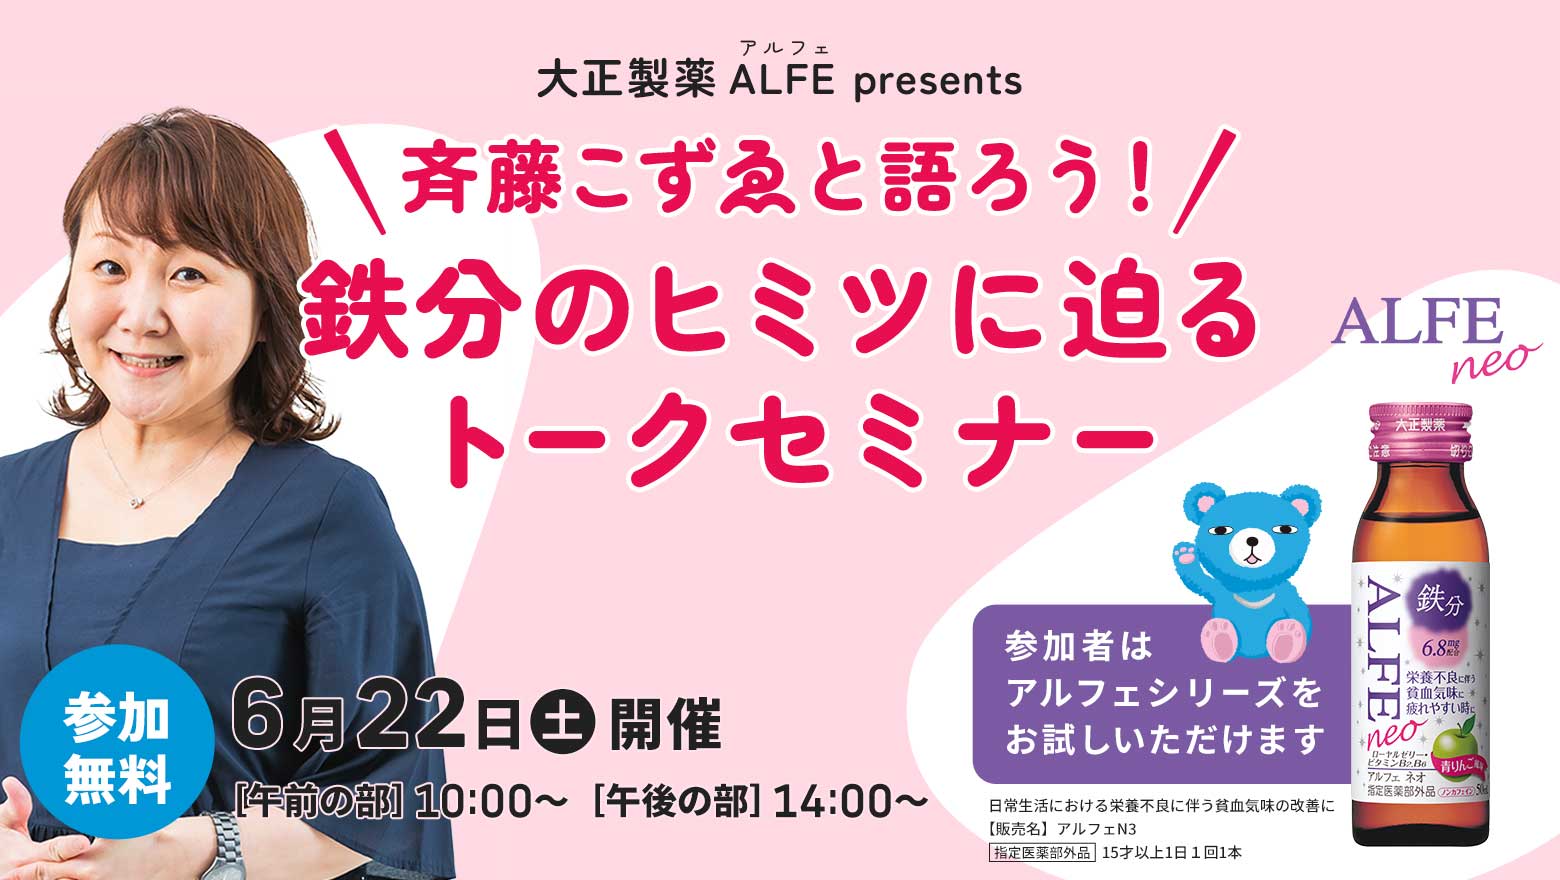 大正製薬 ALFE(アルフェ) presents　斉藤こずゑと語ろう！鉄分のヒミツに迫るトークセミナー